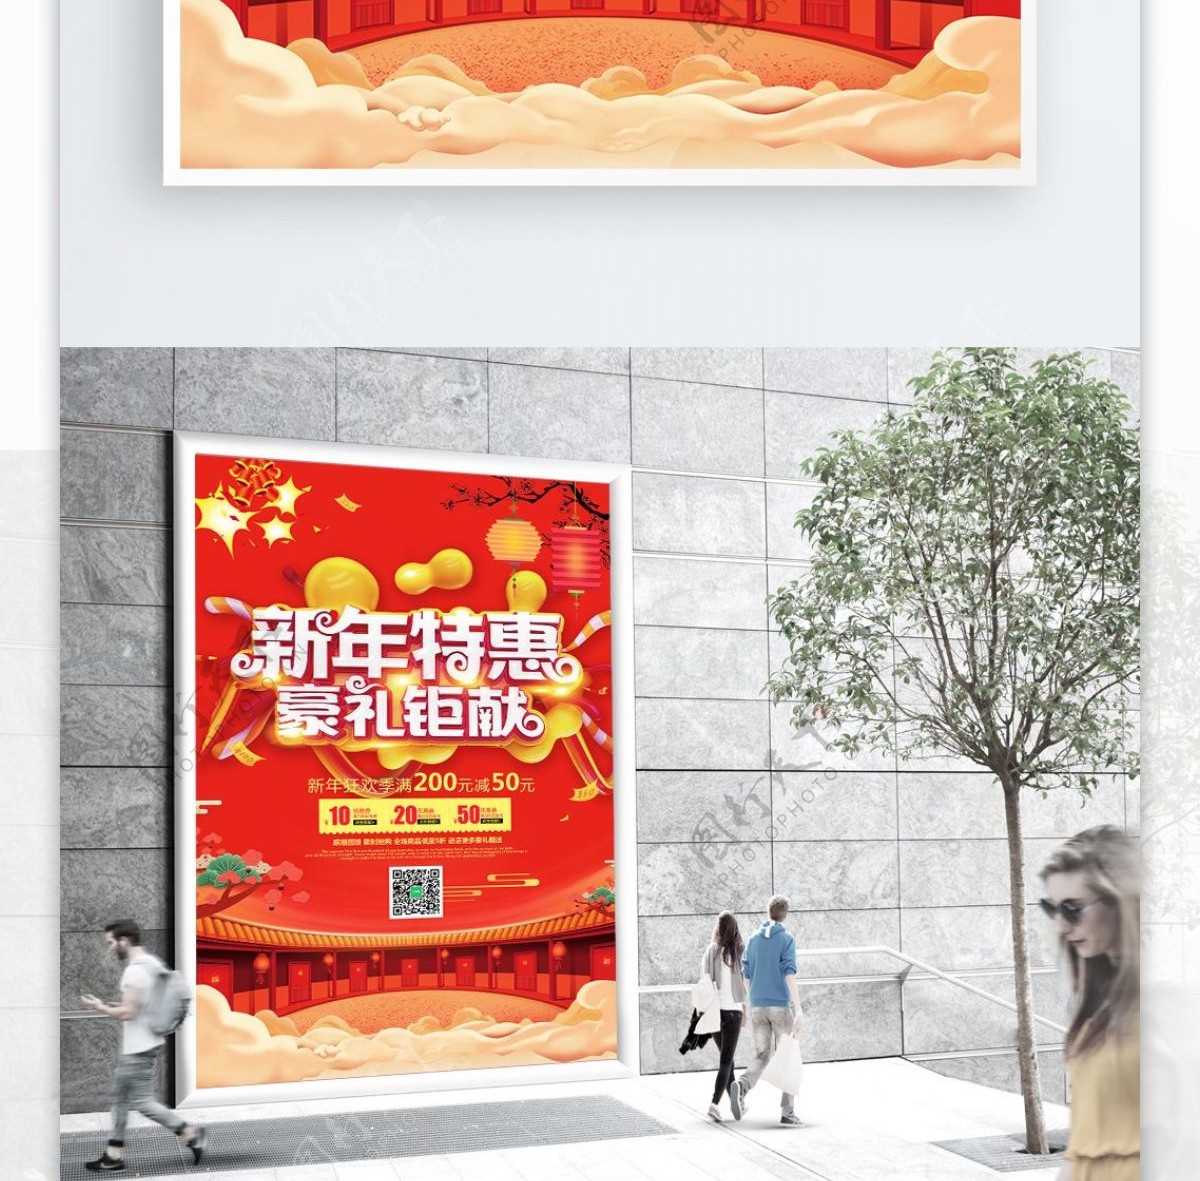 大气红色新年特惠促销海报设计